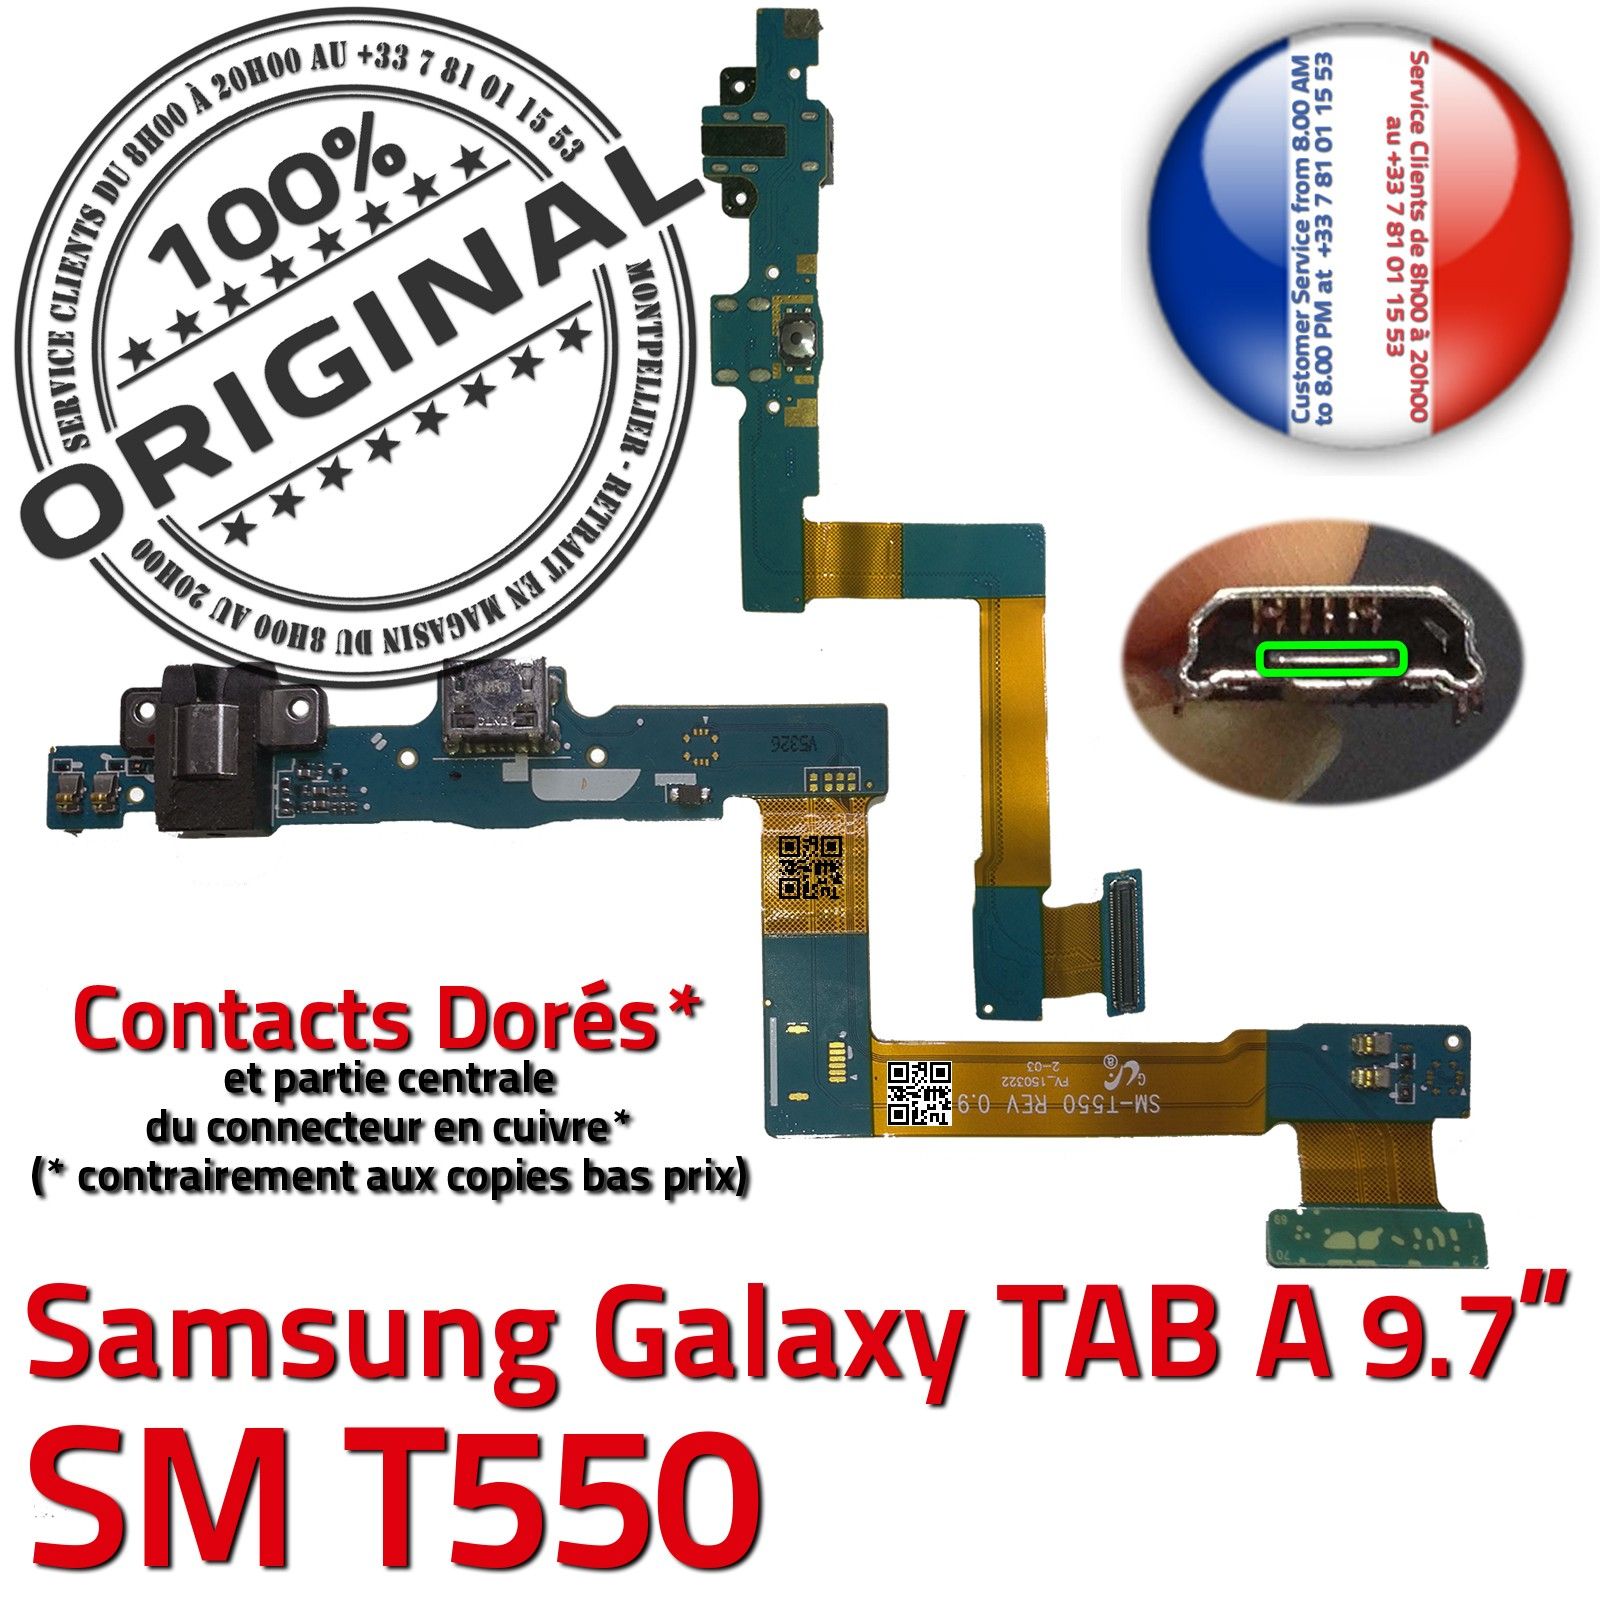 TAB A SM T550 ORIGINAL Samsung Galaxy Connecteur de Charge Chargeur MicroUSB Nappe OFFICIELLE Qualité Contact Doré Réparation